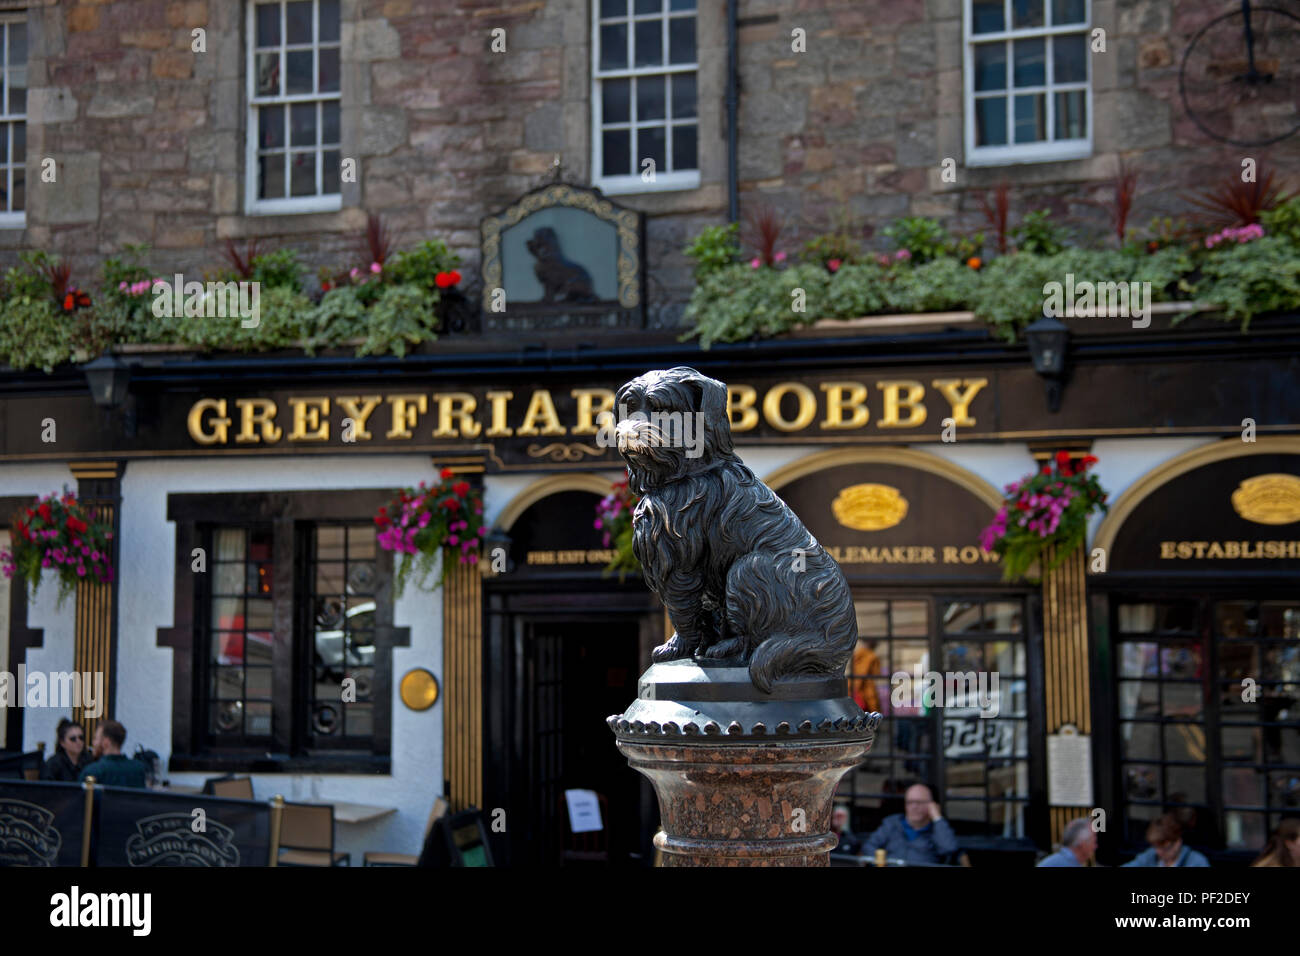 L'Grayfriar avec Bobby nez usés, Édimbourg, Écosse, Royaume-Uni Banque D'Images